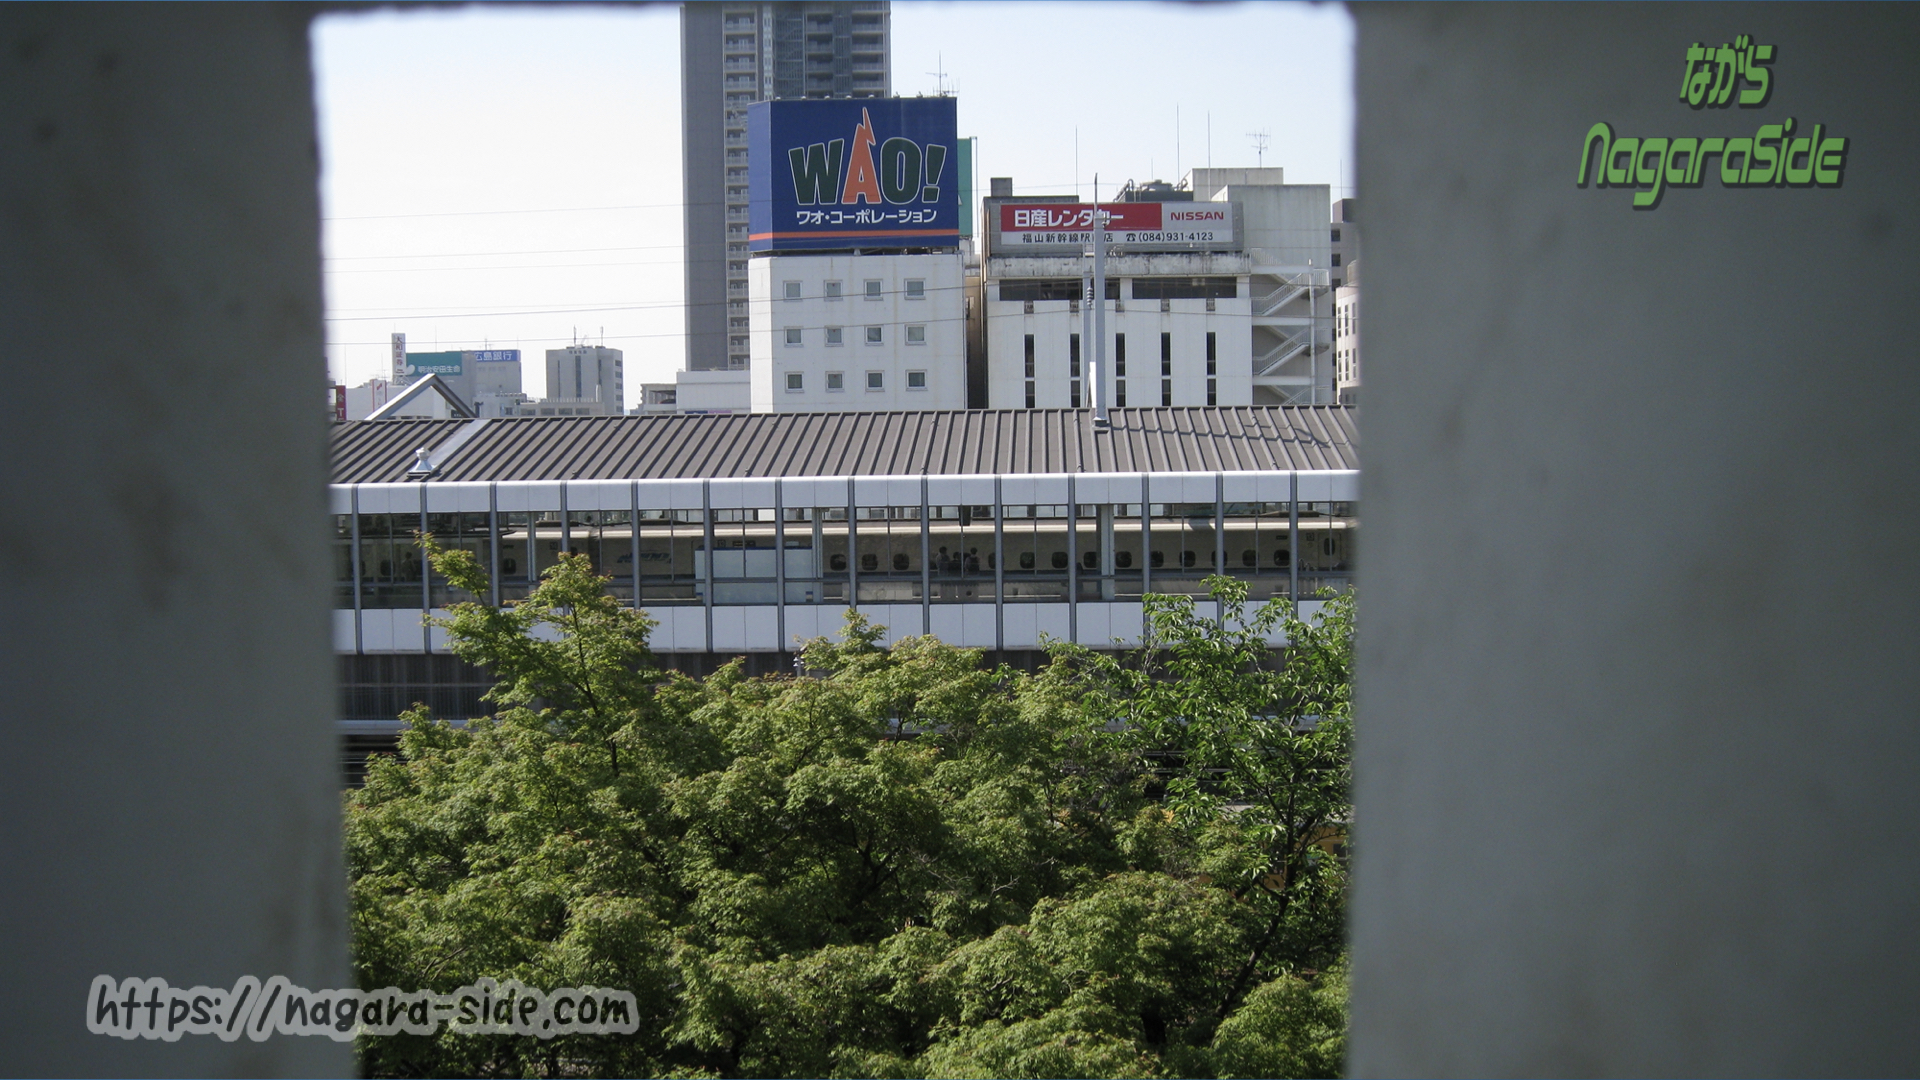 福山城の矢狭間から見える福山駅